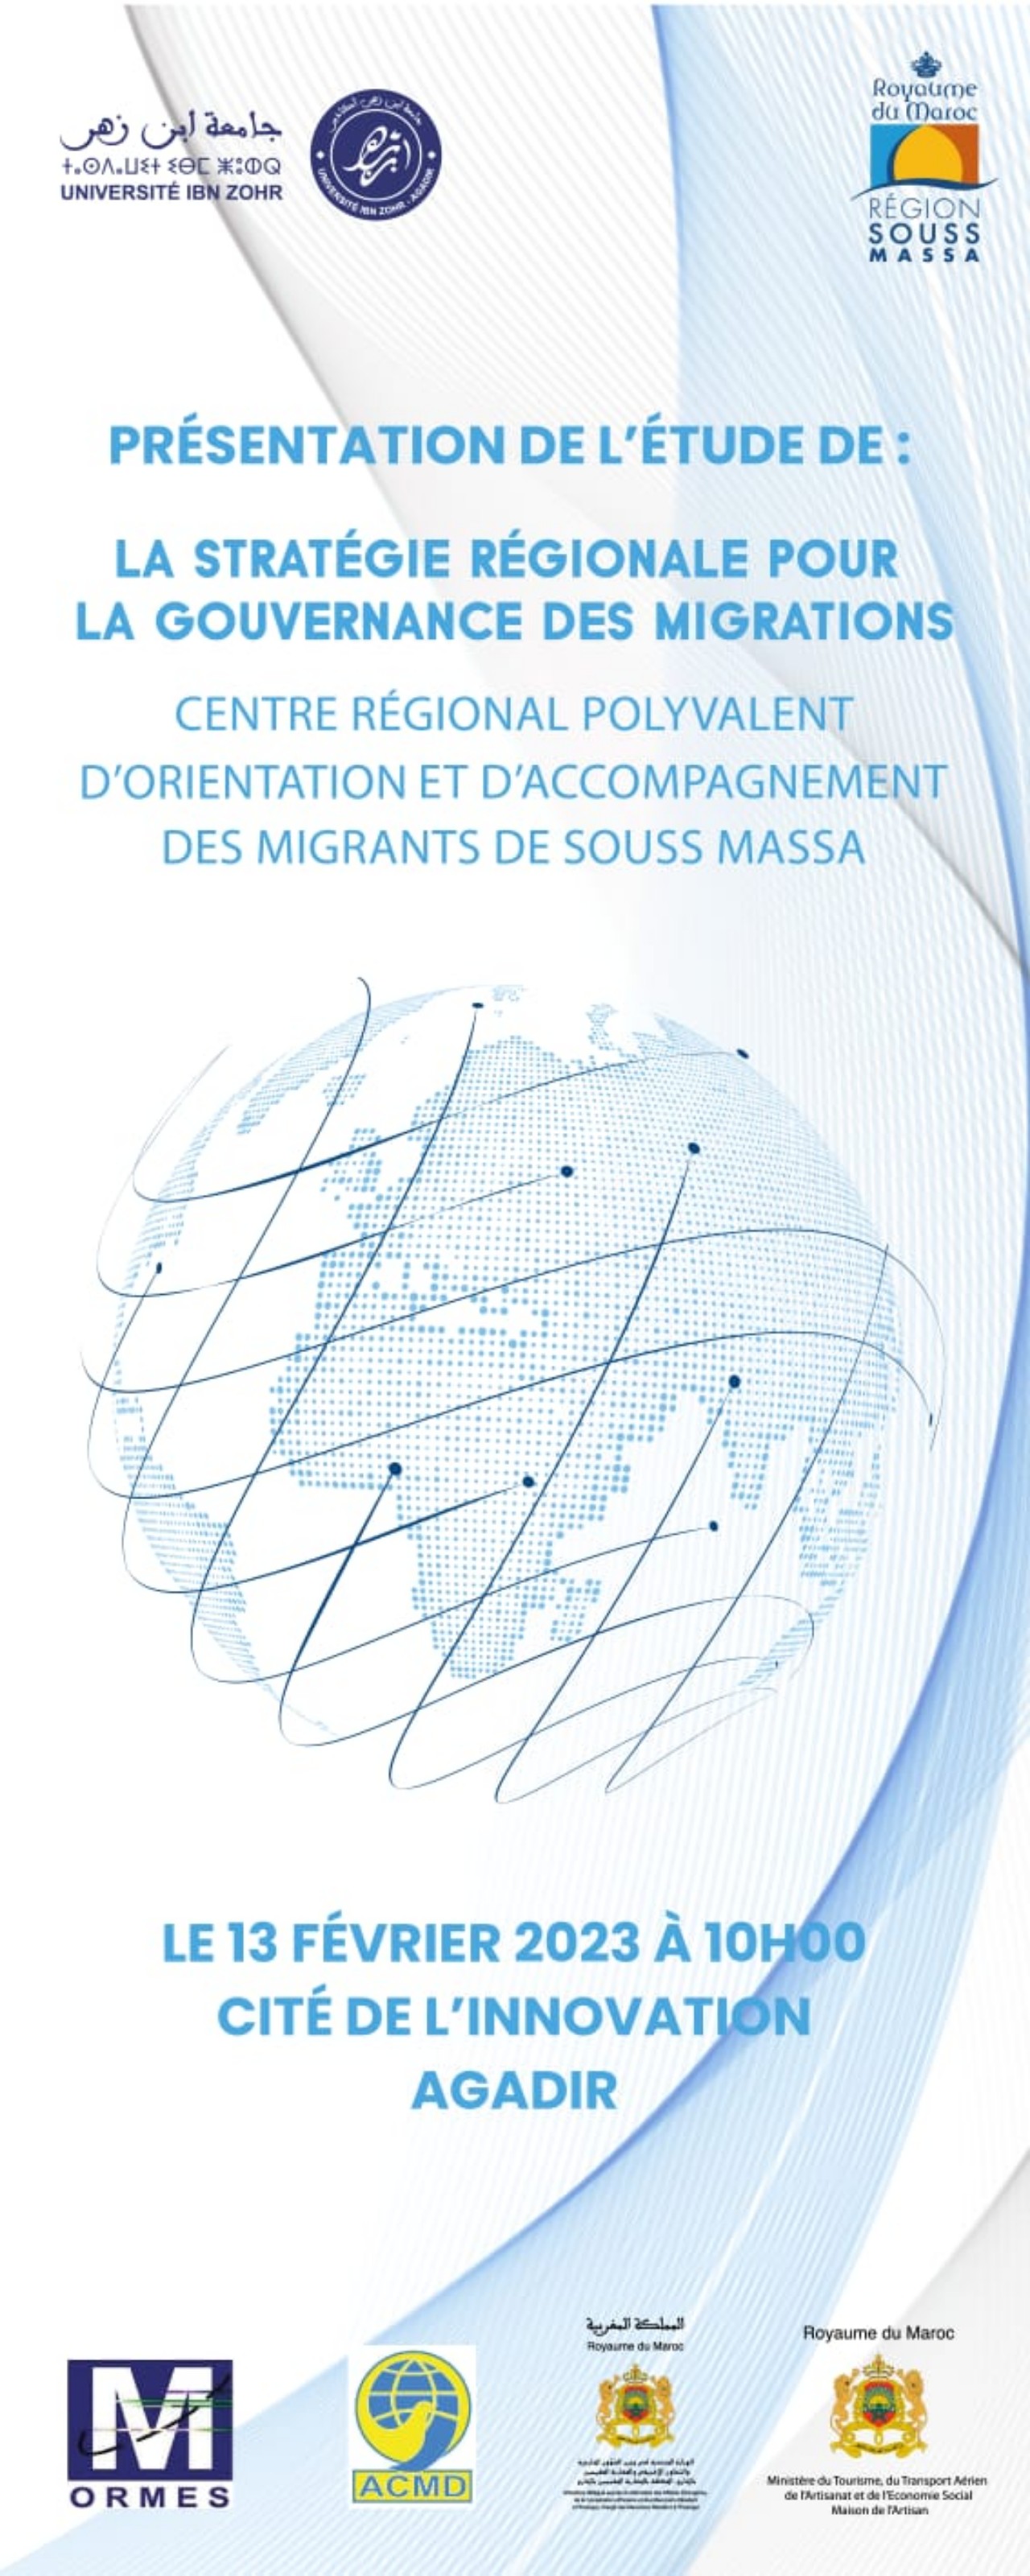 جامعة ابن زهر تقدم دراسة حول الهجرة والمهاجرين بجهة سوس ماسة